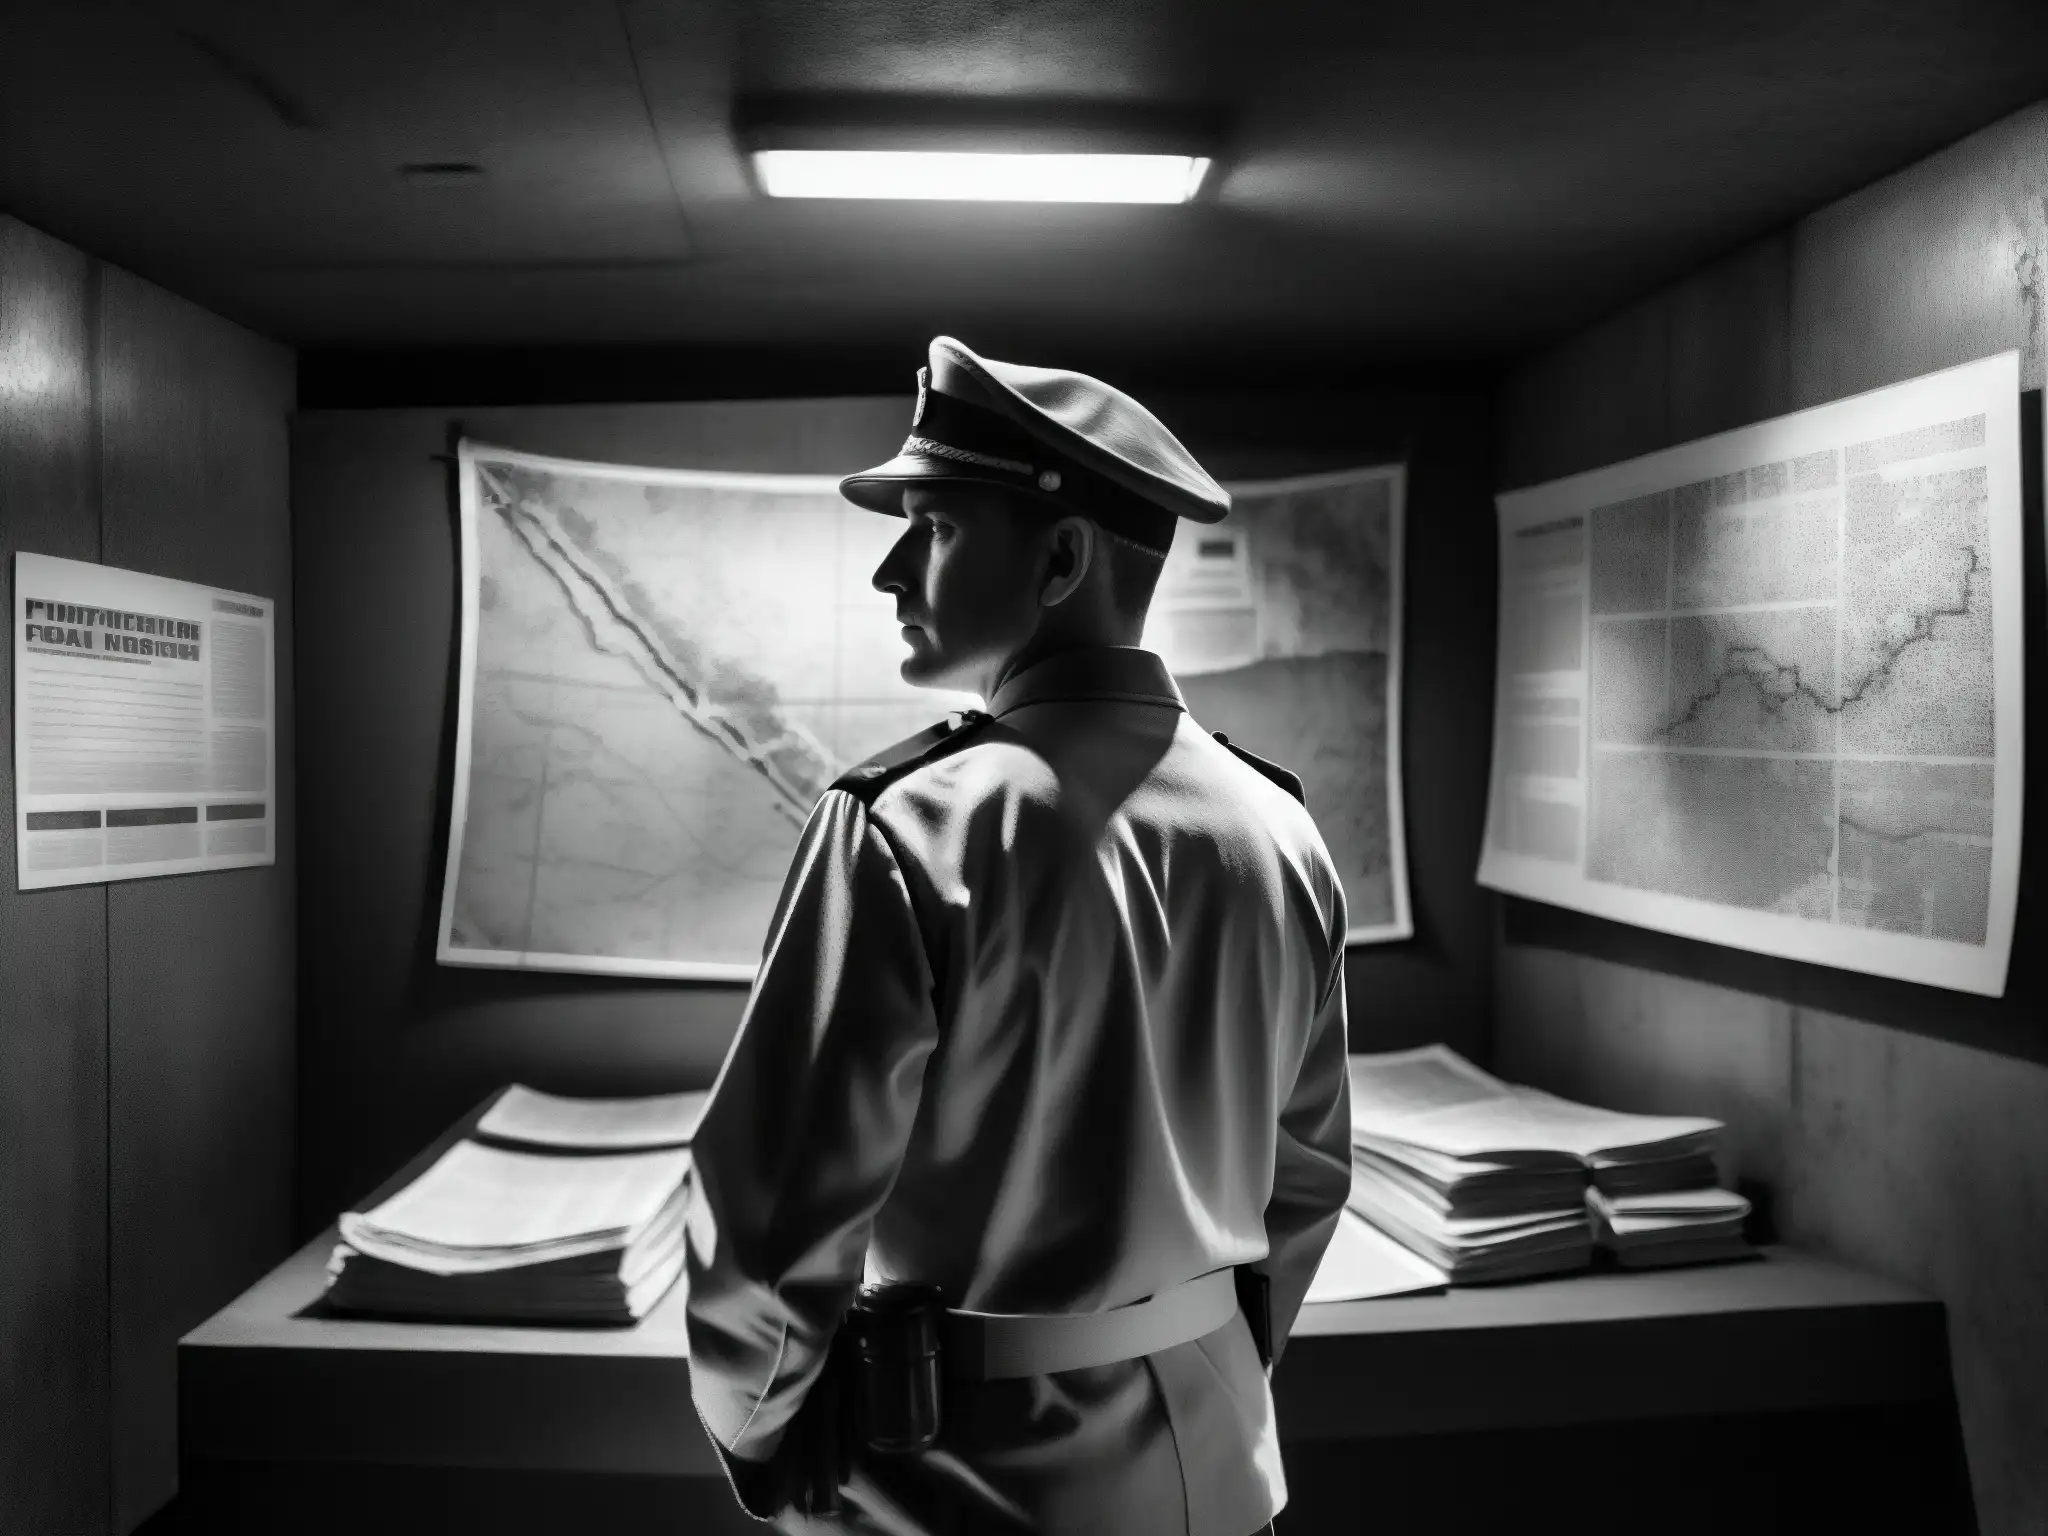 Soldado en bunker oscuro rodeado de mapas, crea atmósfera de misterio y secretos